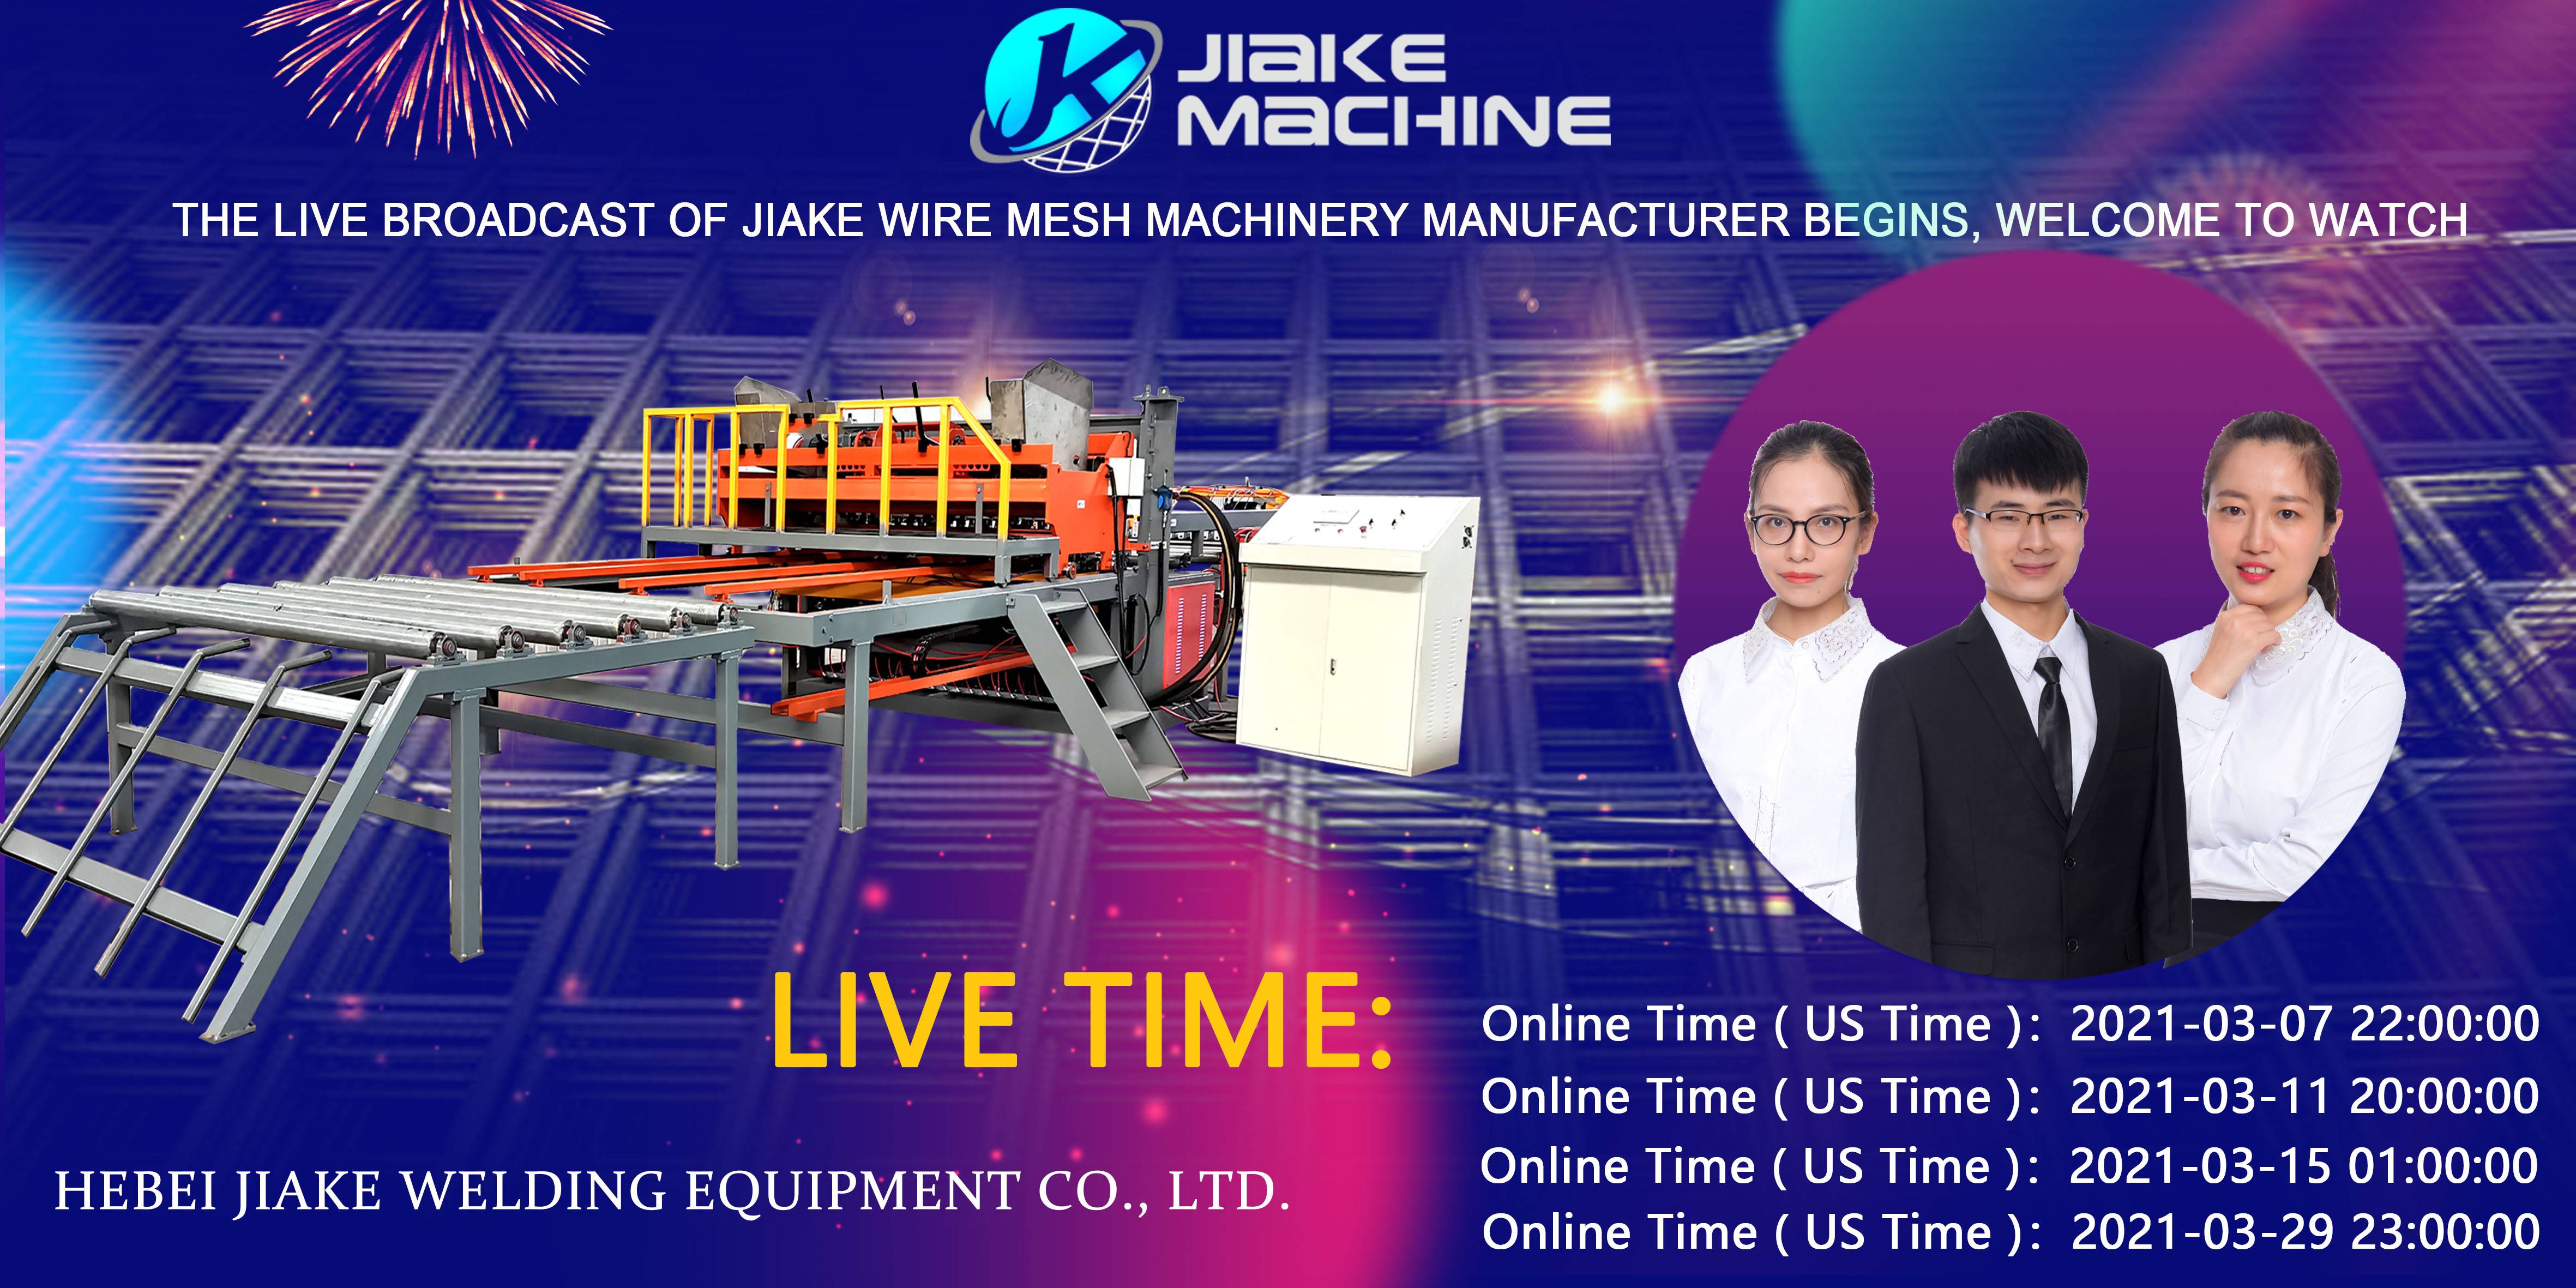 Direktan prijenos Jiake Wire Mesh Machinery dolazi u martu, dobrodošli na gledanje